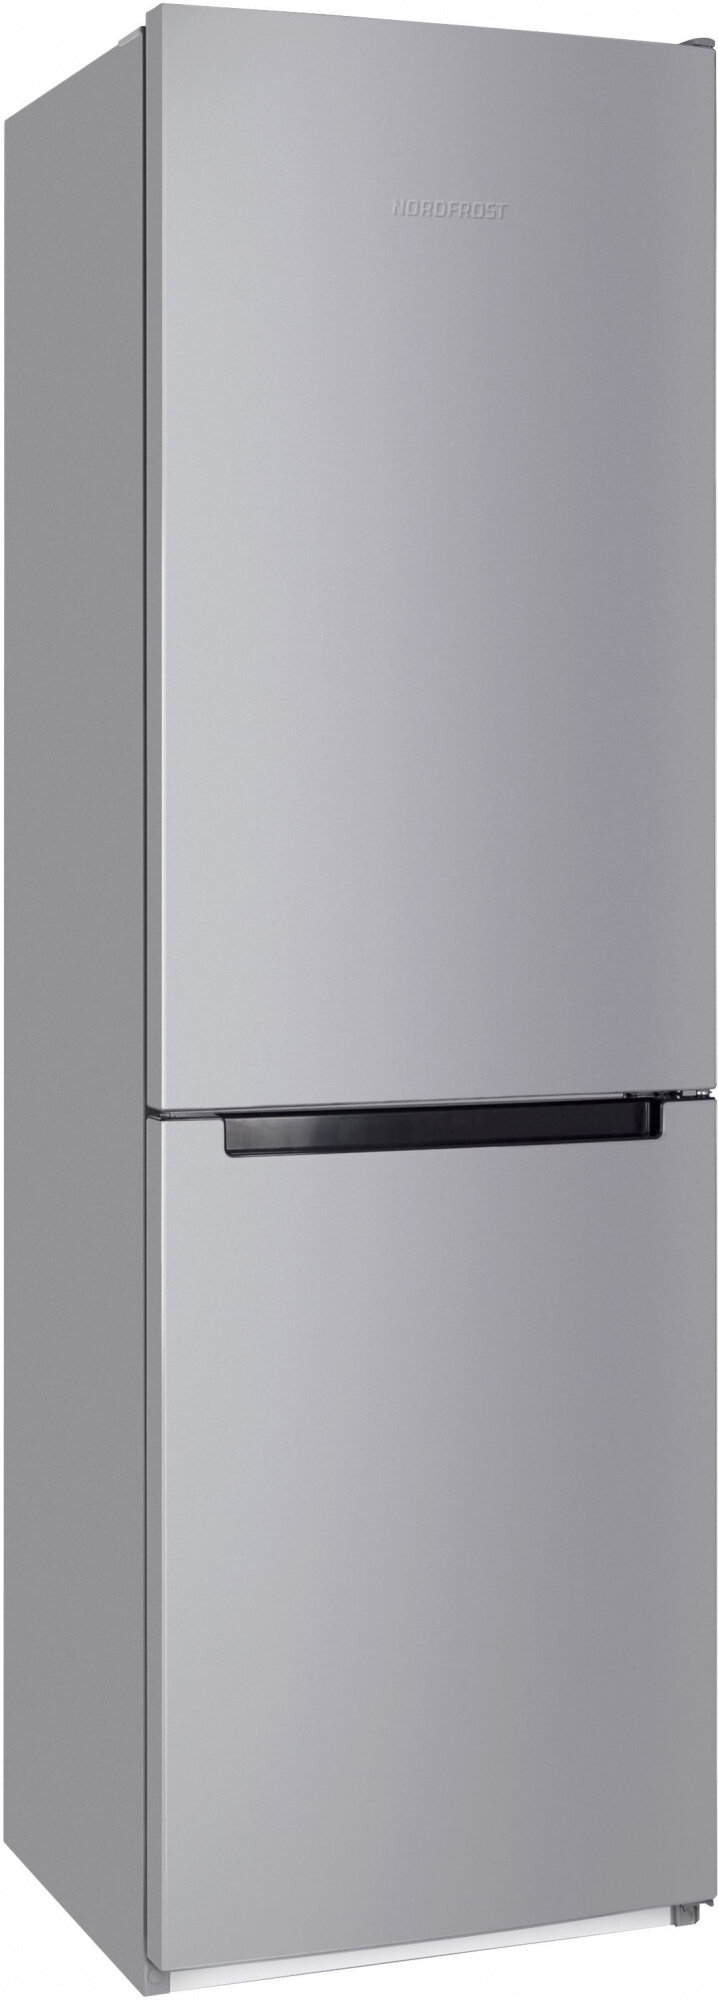 NORDFROST Холодильник Nordfrost NRB 152 S 2-хкамерн. серый